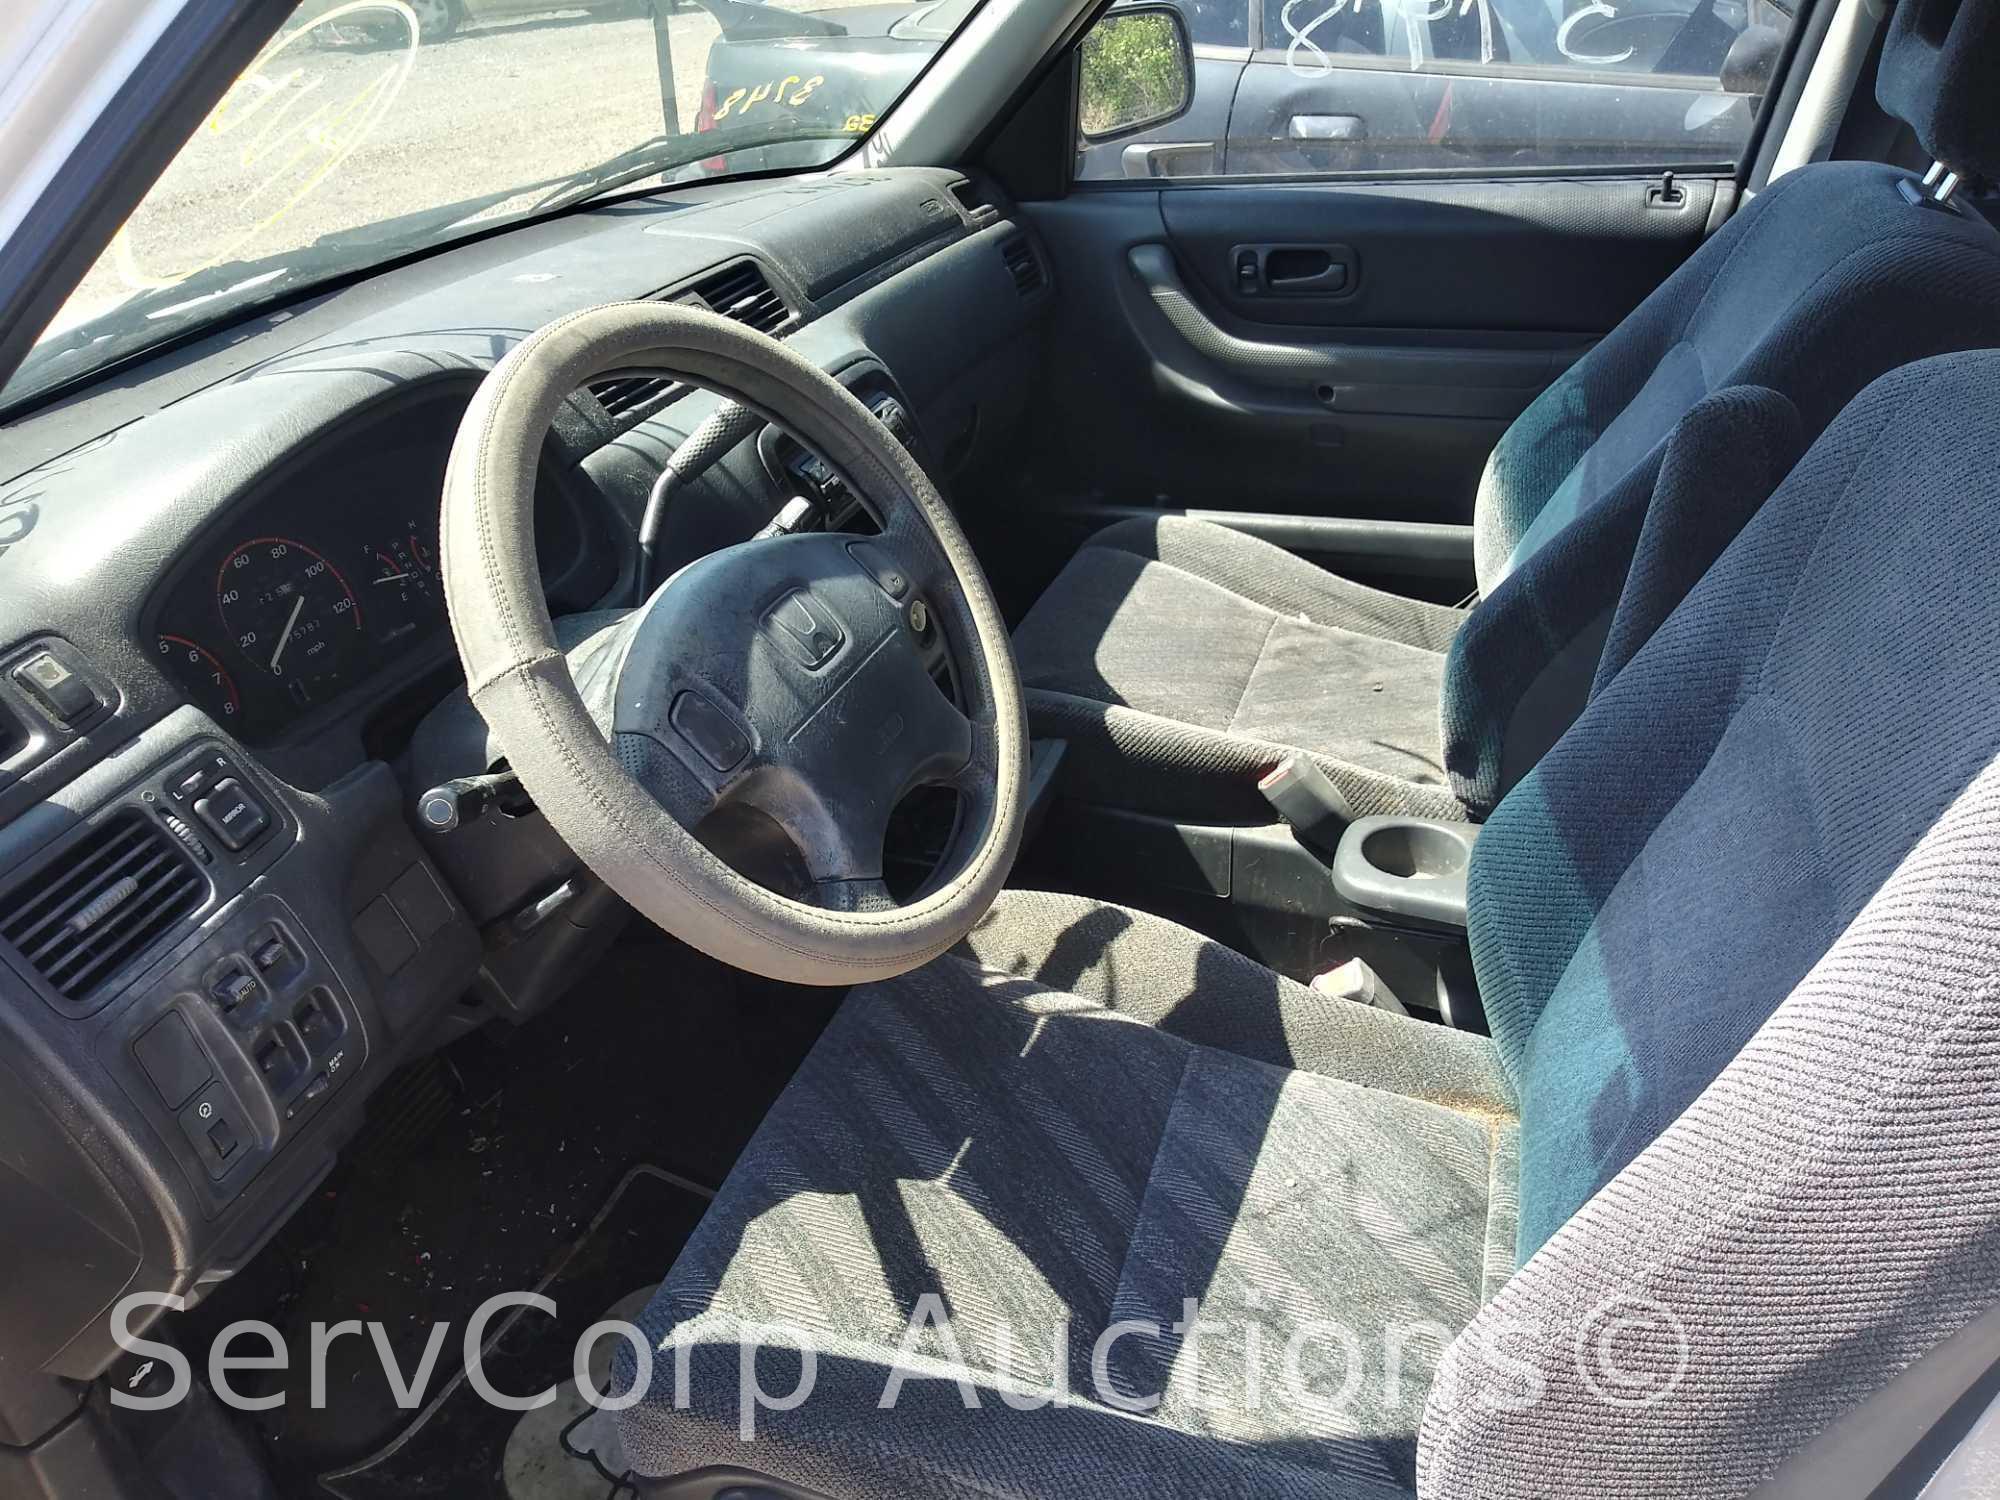 1999 Honda CR-V Multipurpose Vehicle (MPV), VIN # JHLRD2841XC022227